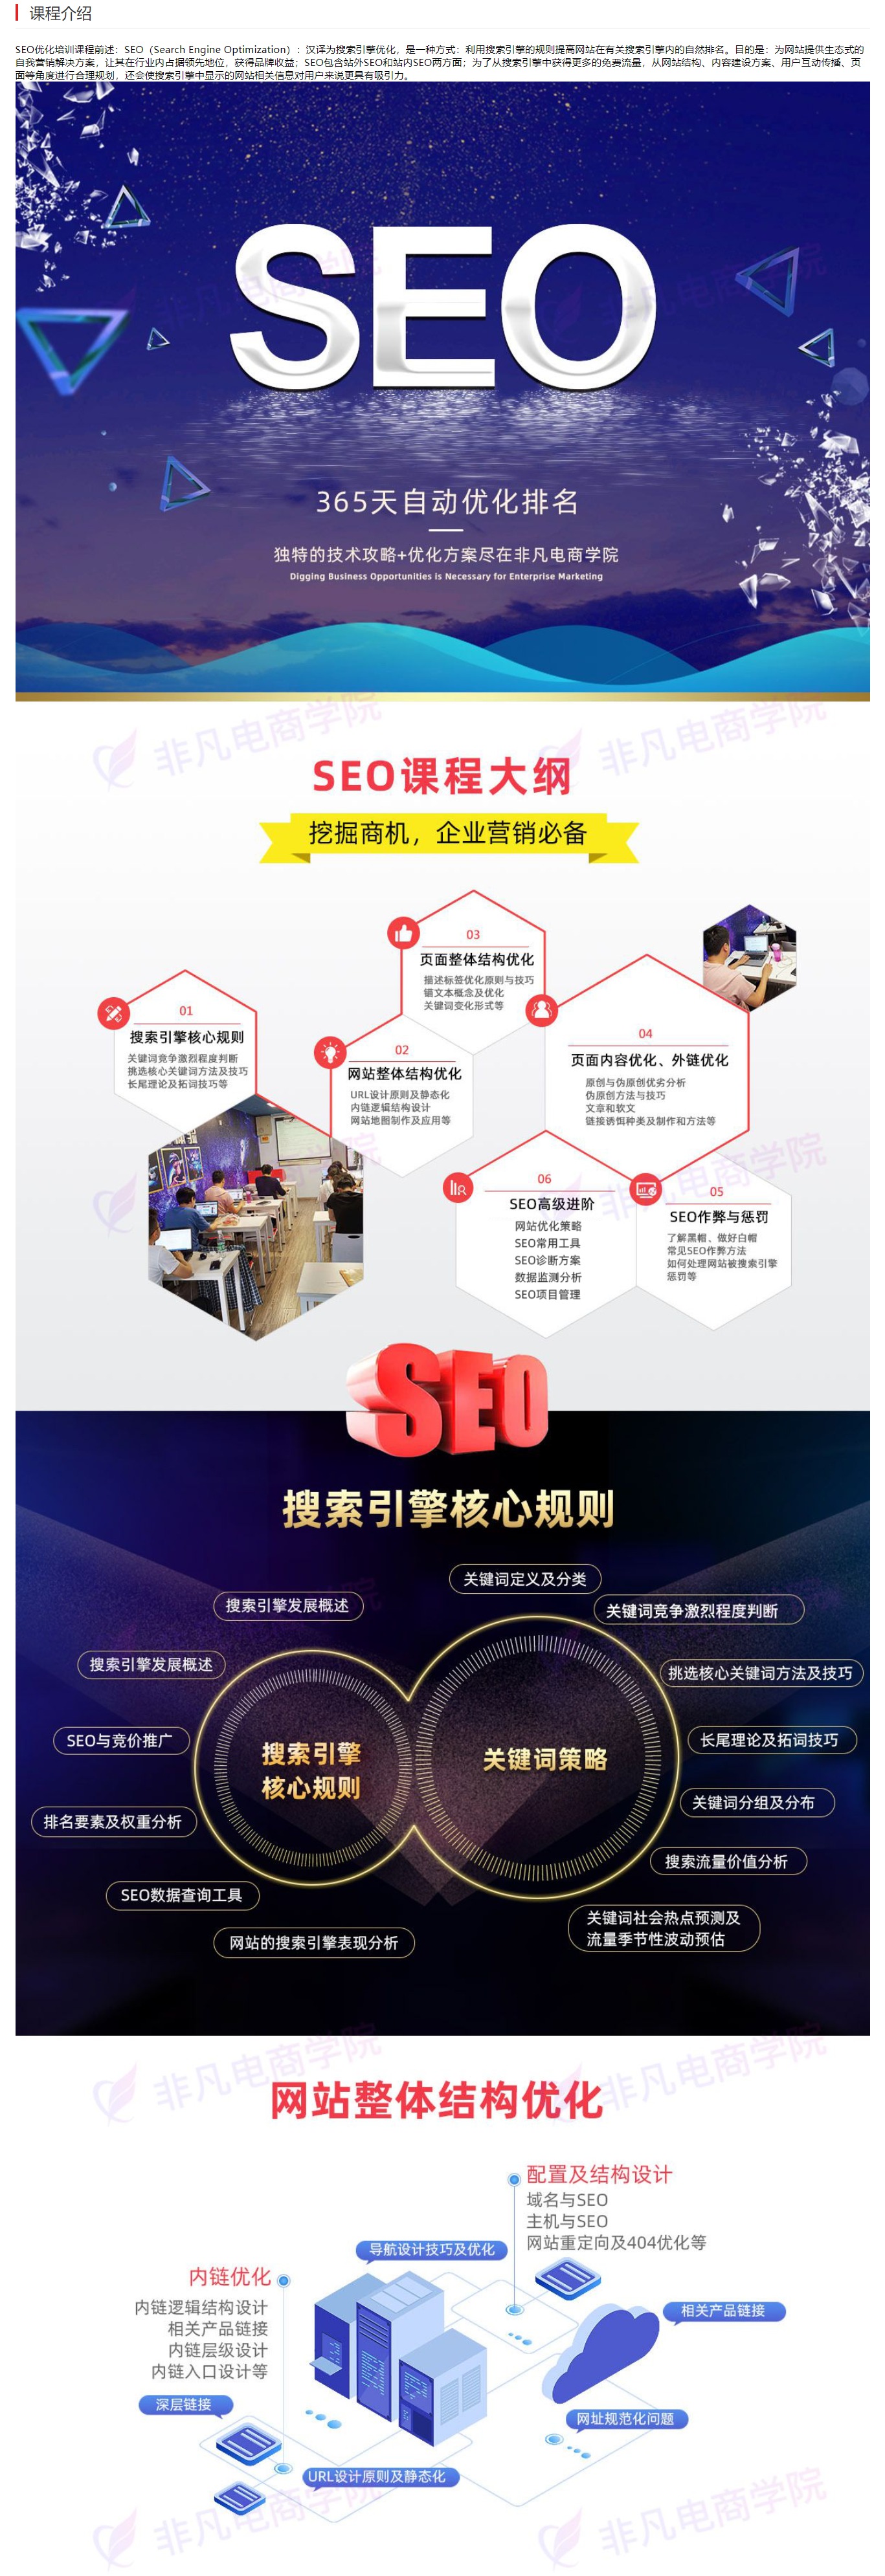 上海搜索引擎Seo优化实战培训班